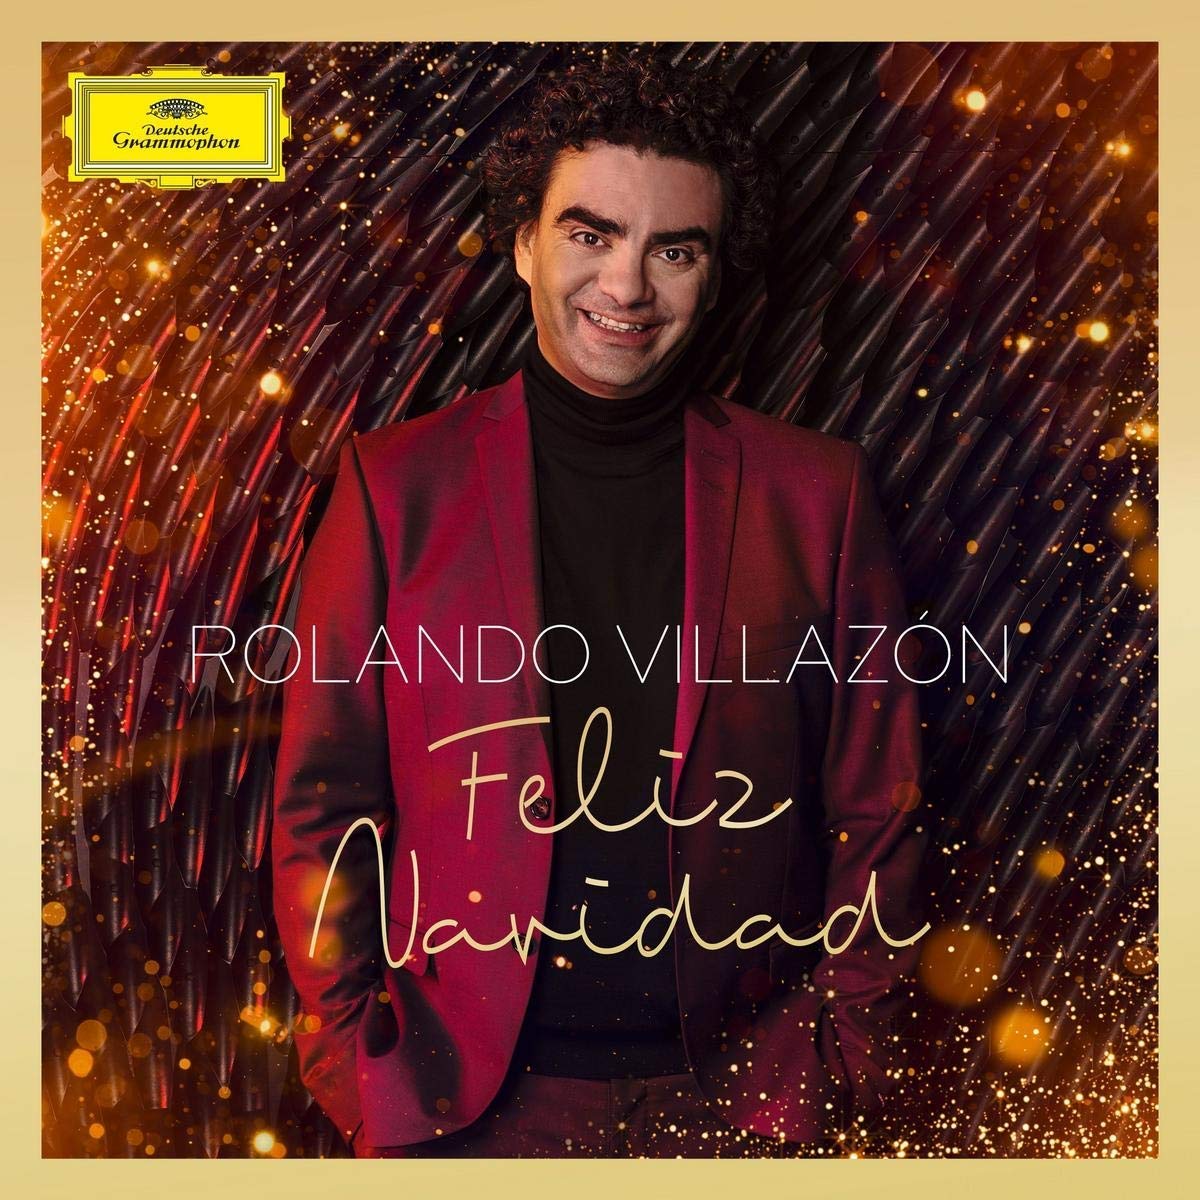 Feliz Navidad | Rolando Villazn , Allan Wilson, Rolando Villazn Slovak National Symphony Orchestra